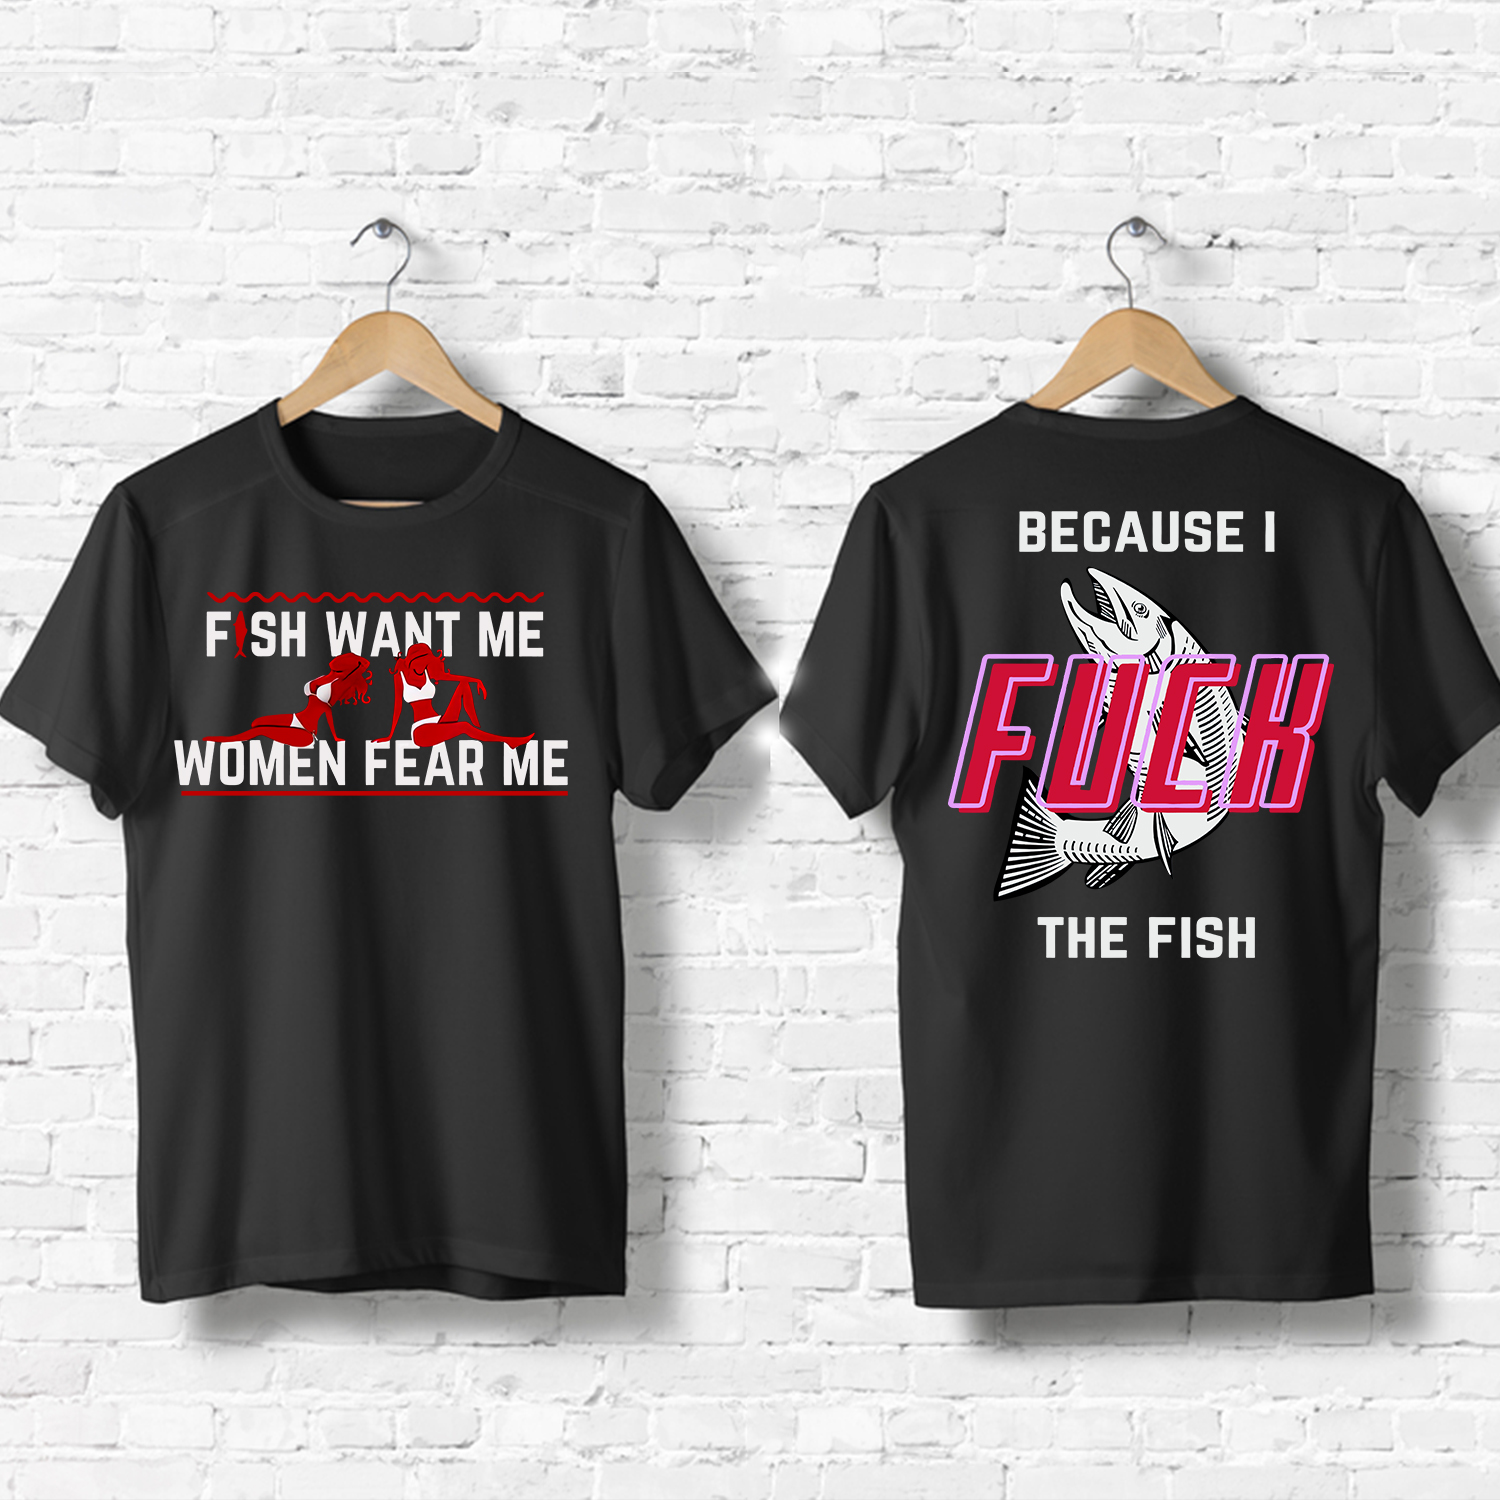 Women Want Me Fish Fear Me T-Shirt